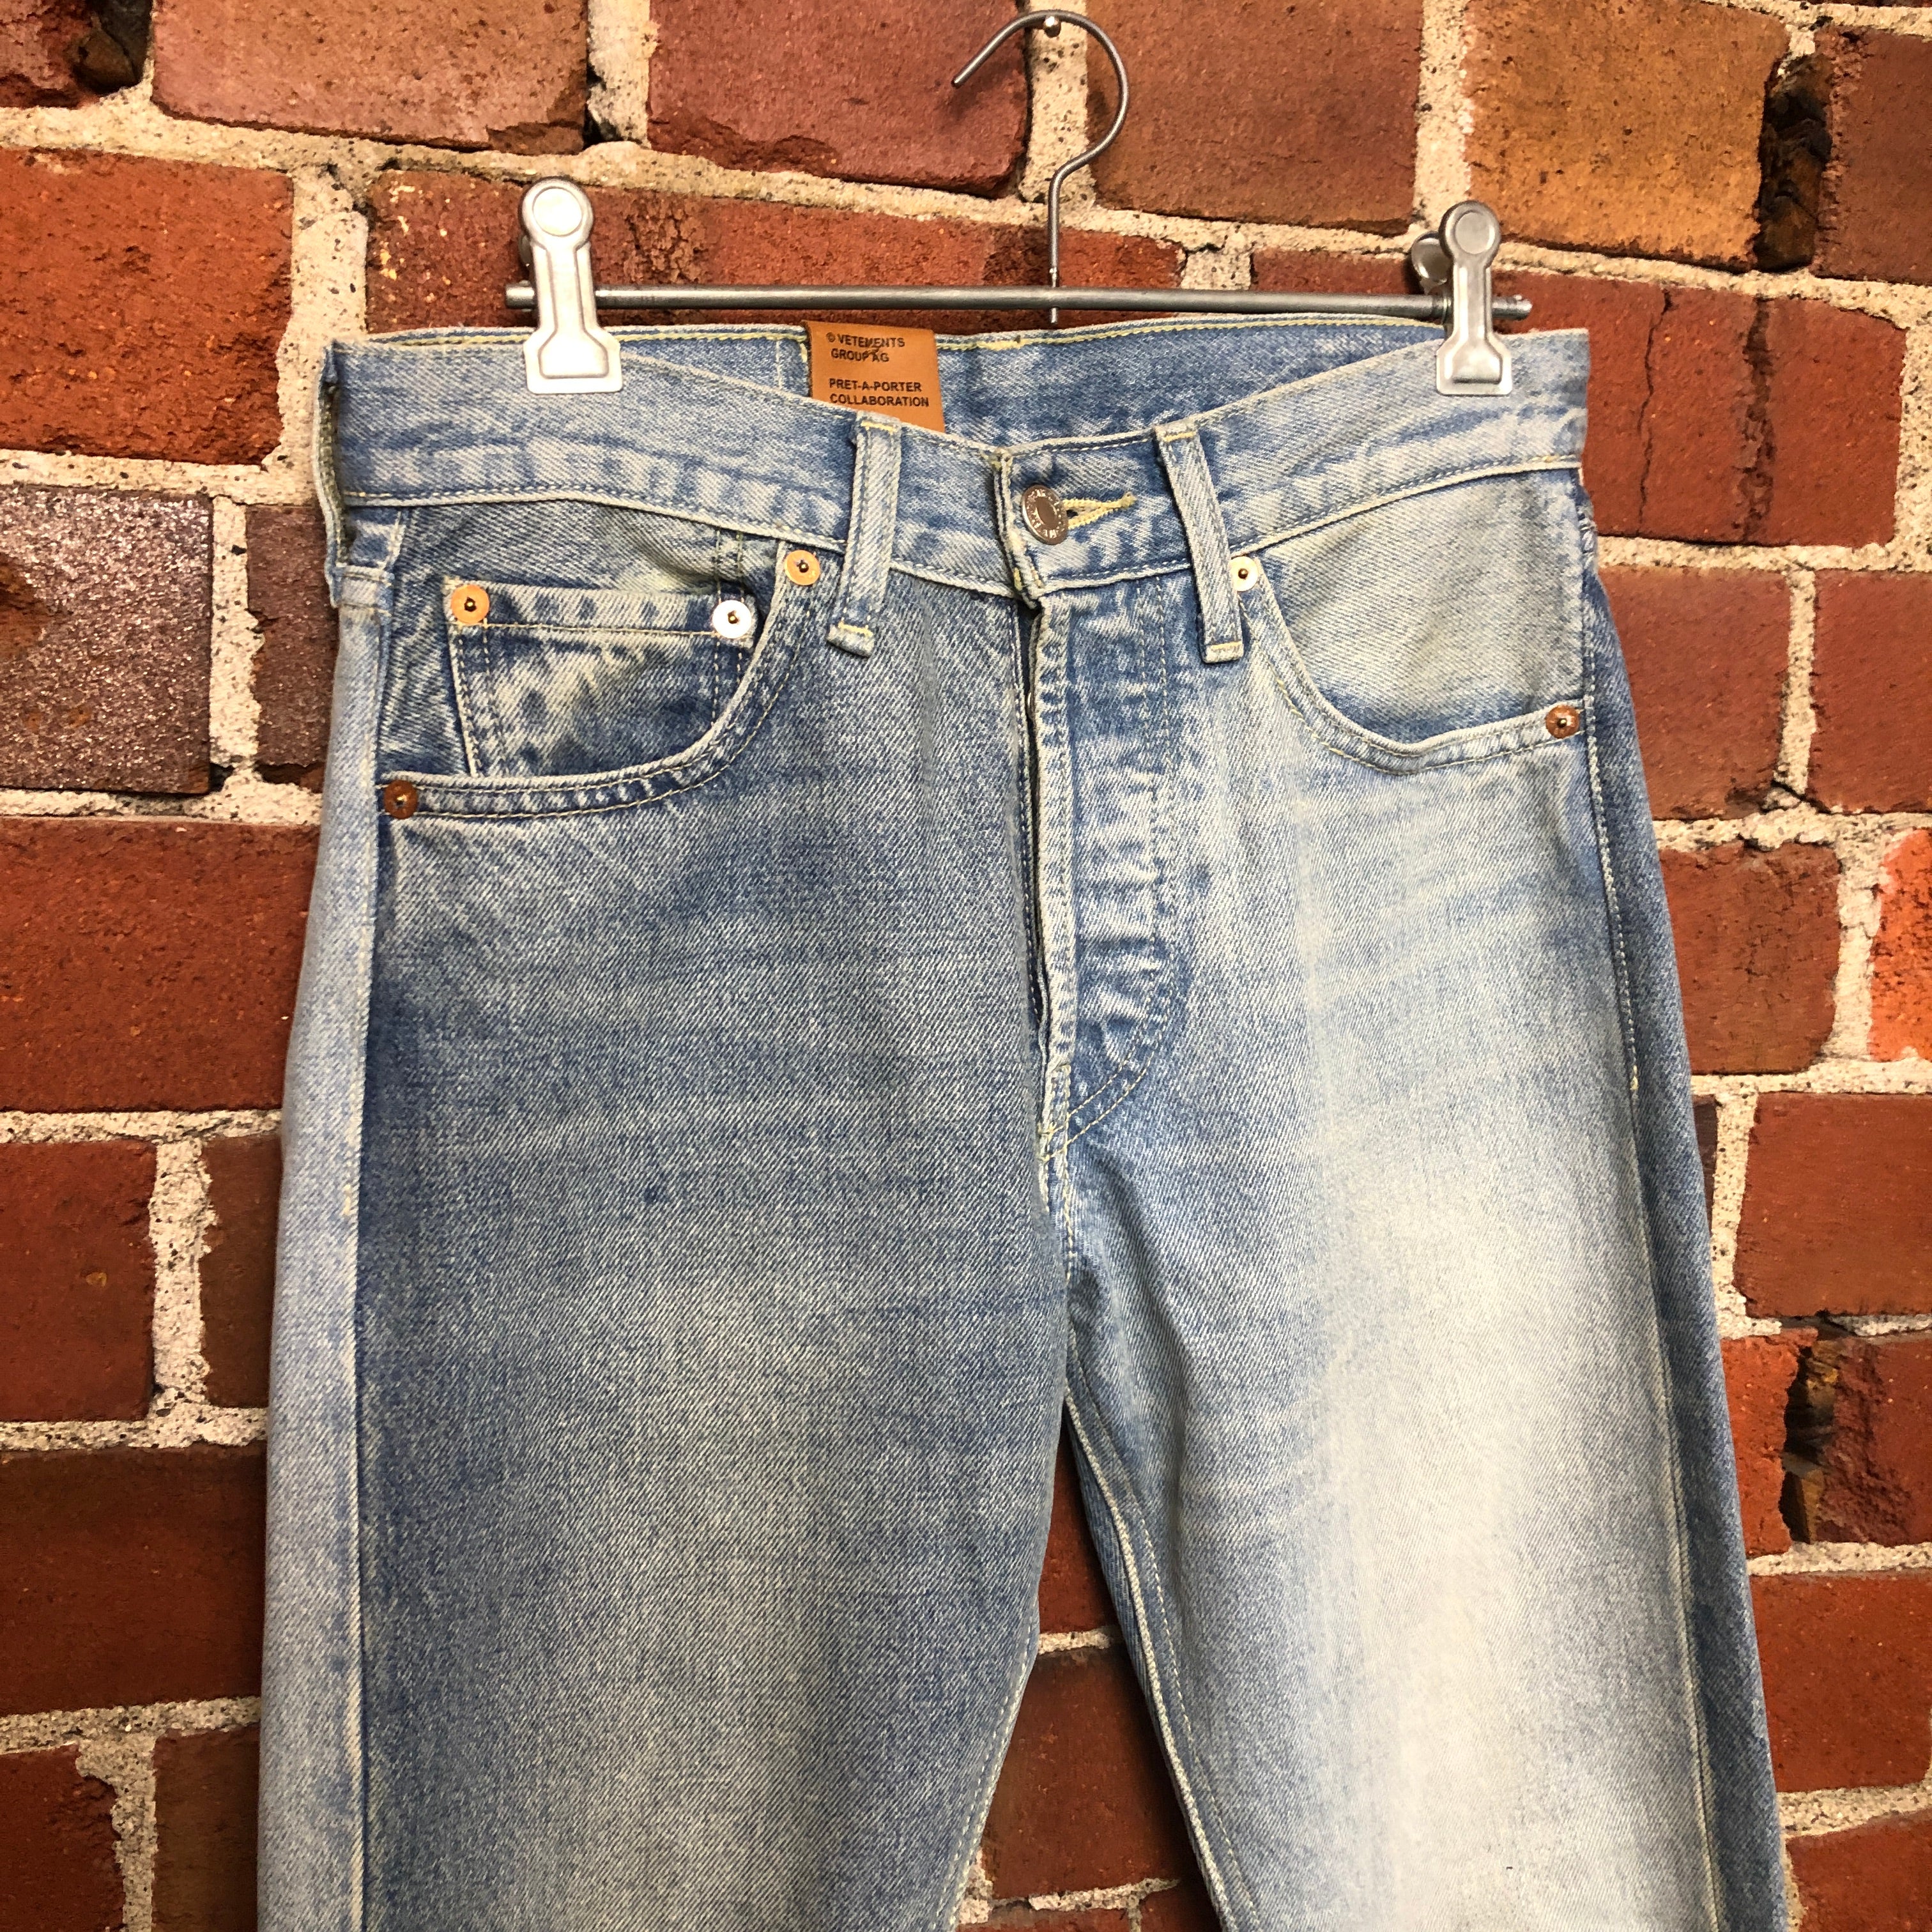 VETEMENTS X LEVIS  2 tone jeans